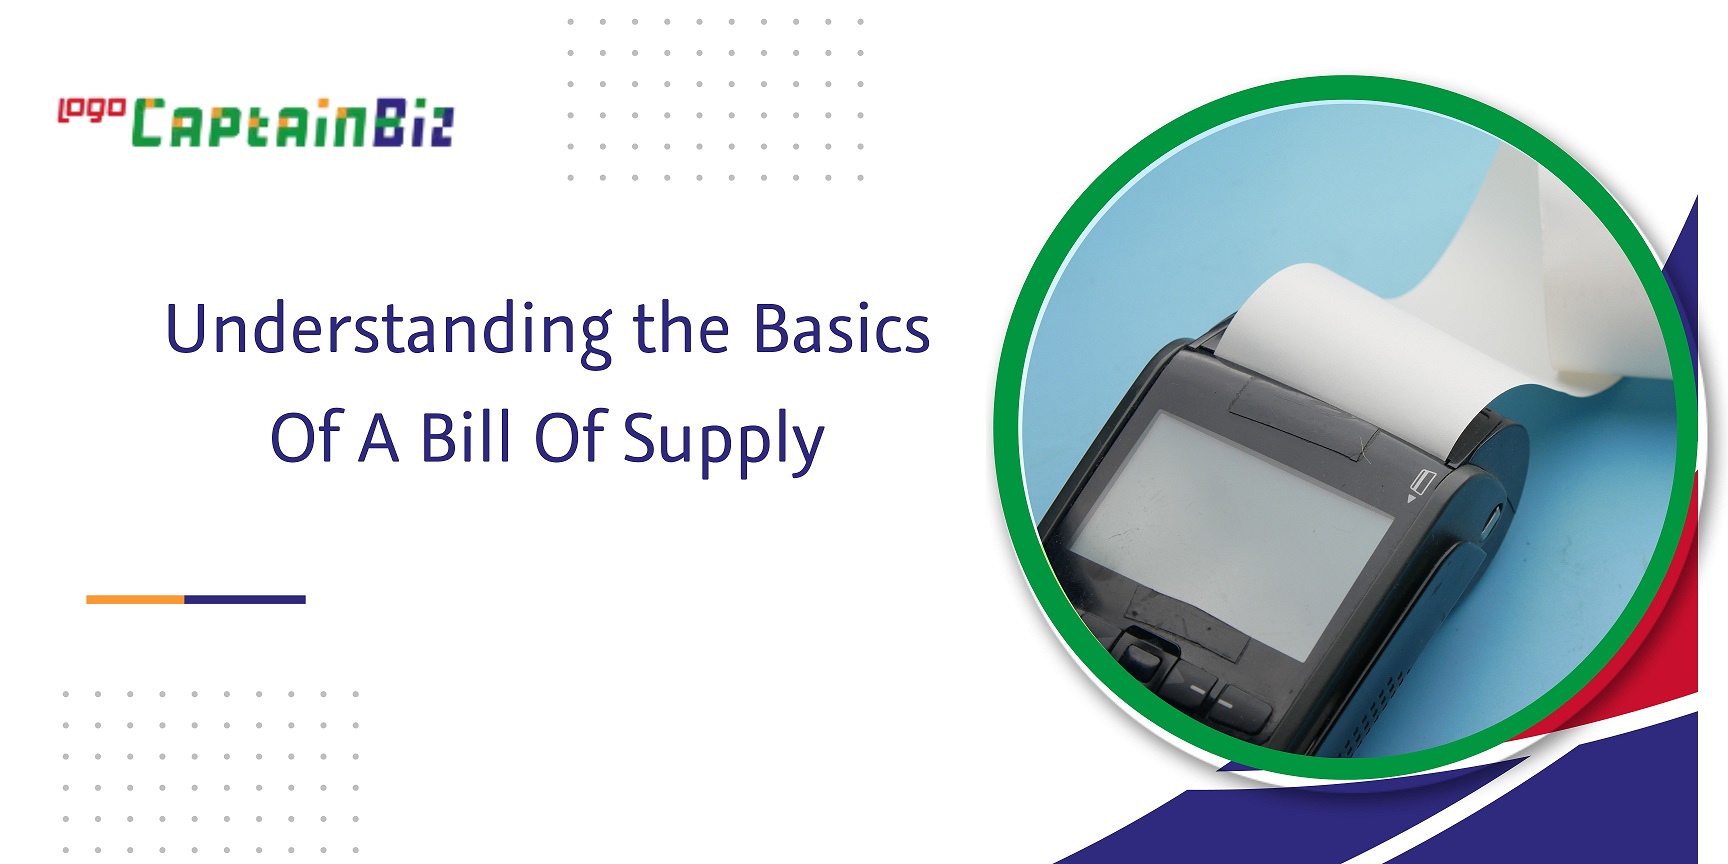 CaptainBiz: understanding the basics of a bill of supply